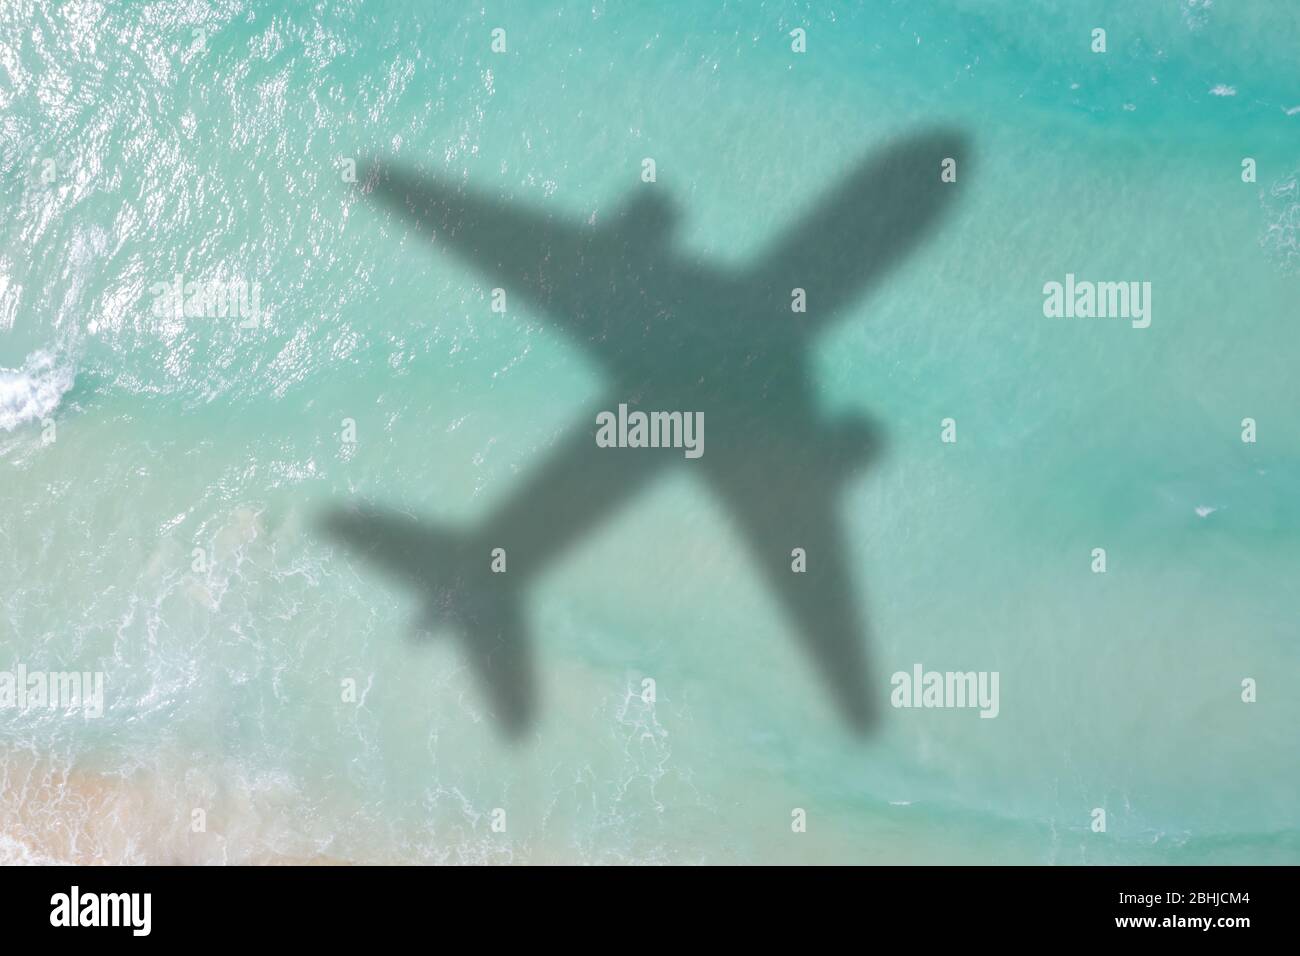 Symbolische Bild Urlaub Reise Reisen Seeflugzeug fliegen Seychellen Luftbild Wellen Stockfoto